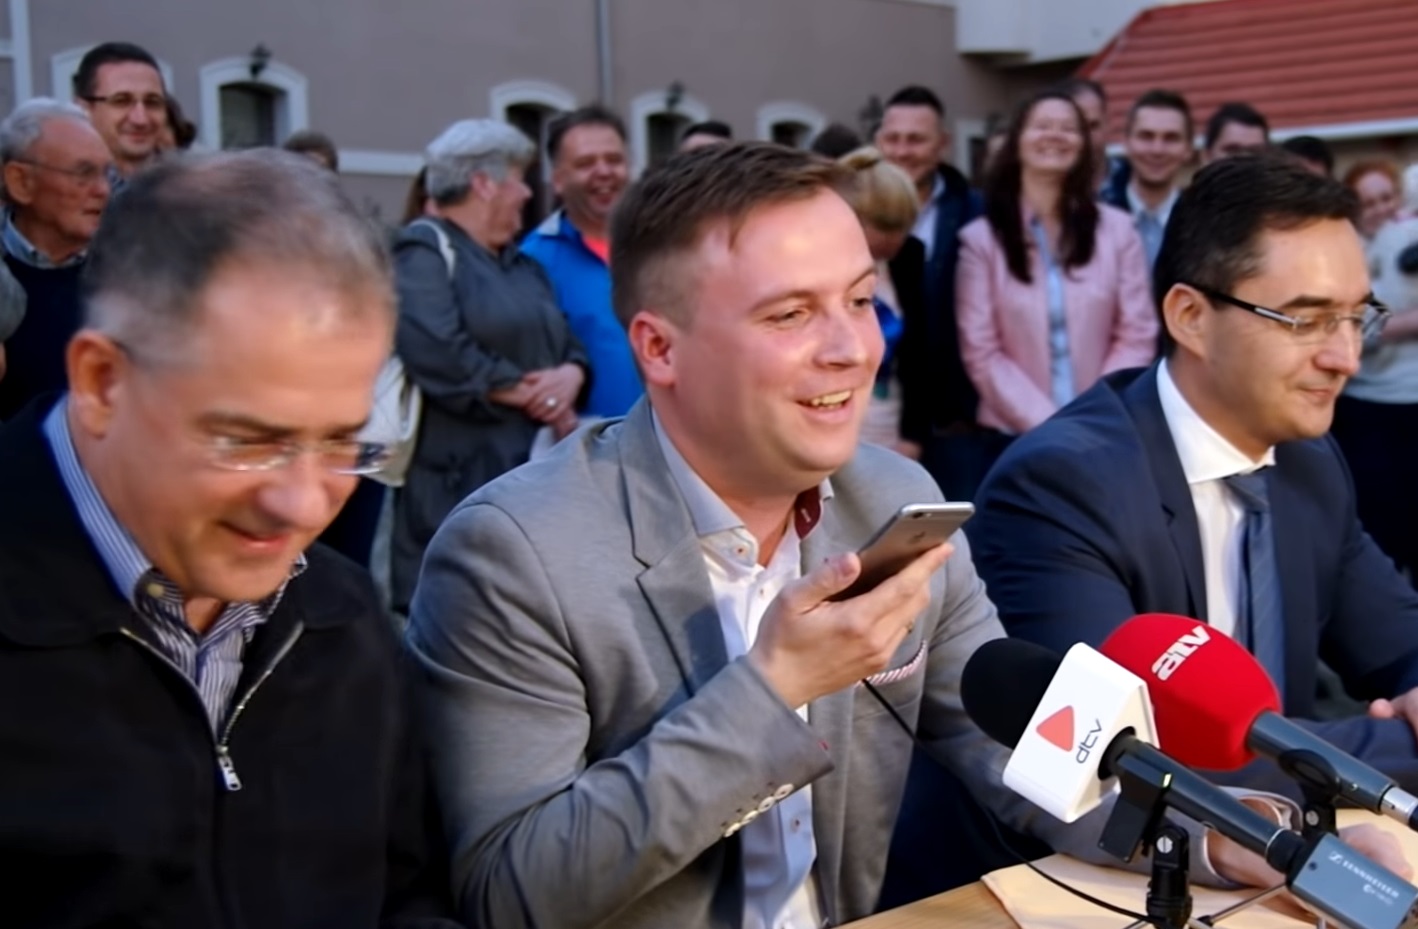 Türk László önkormányzati képviselő a 2017-es időközi választáson elért győzelme után Orbán Viktorral telefonál Kósa Lajos mellett.